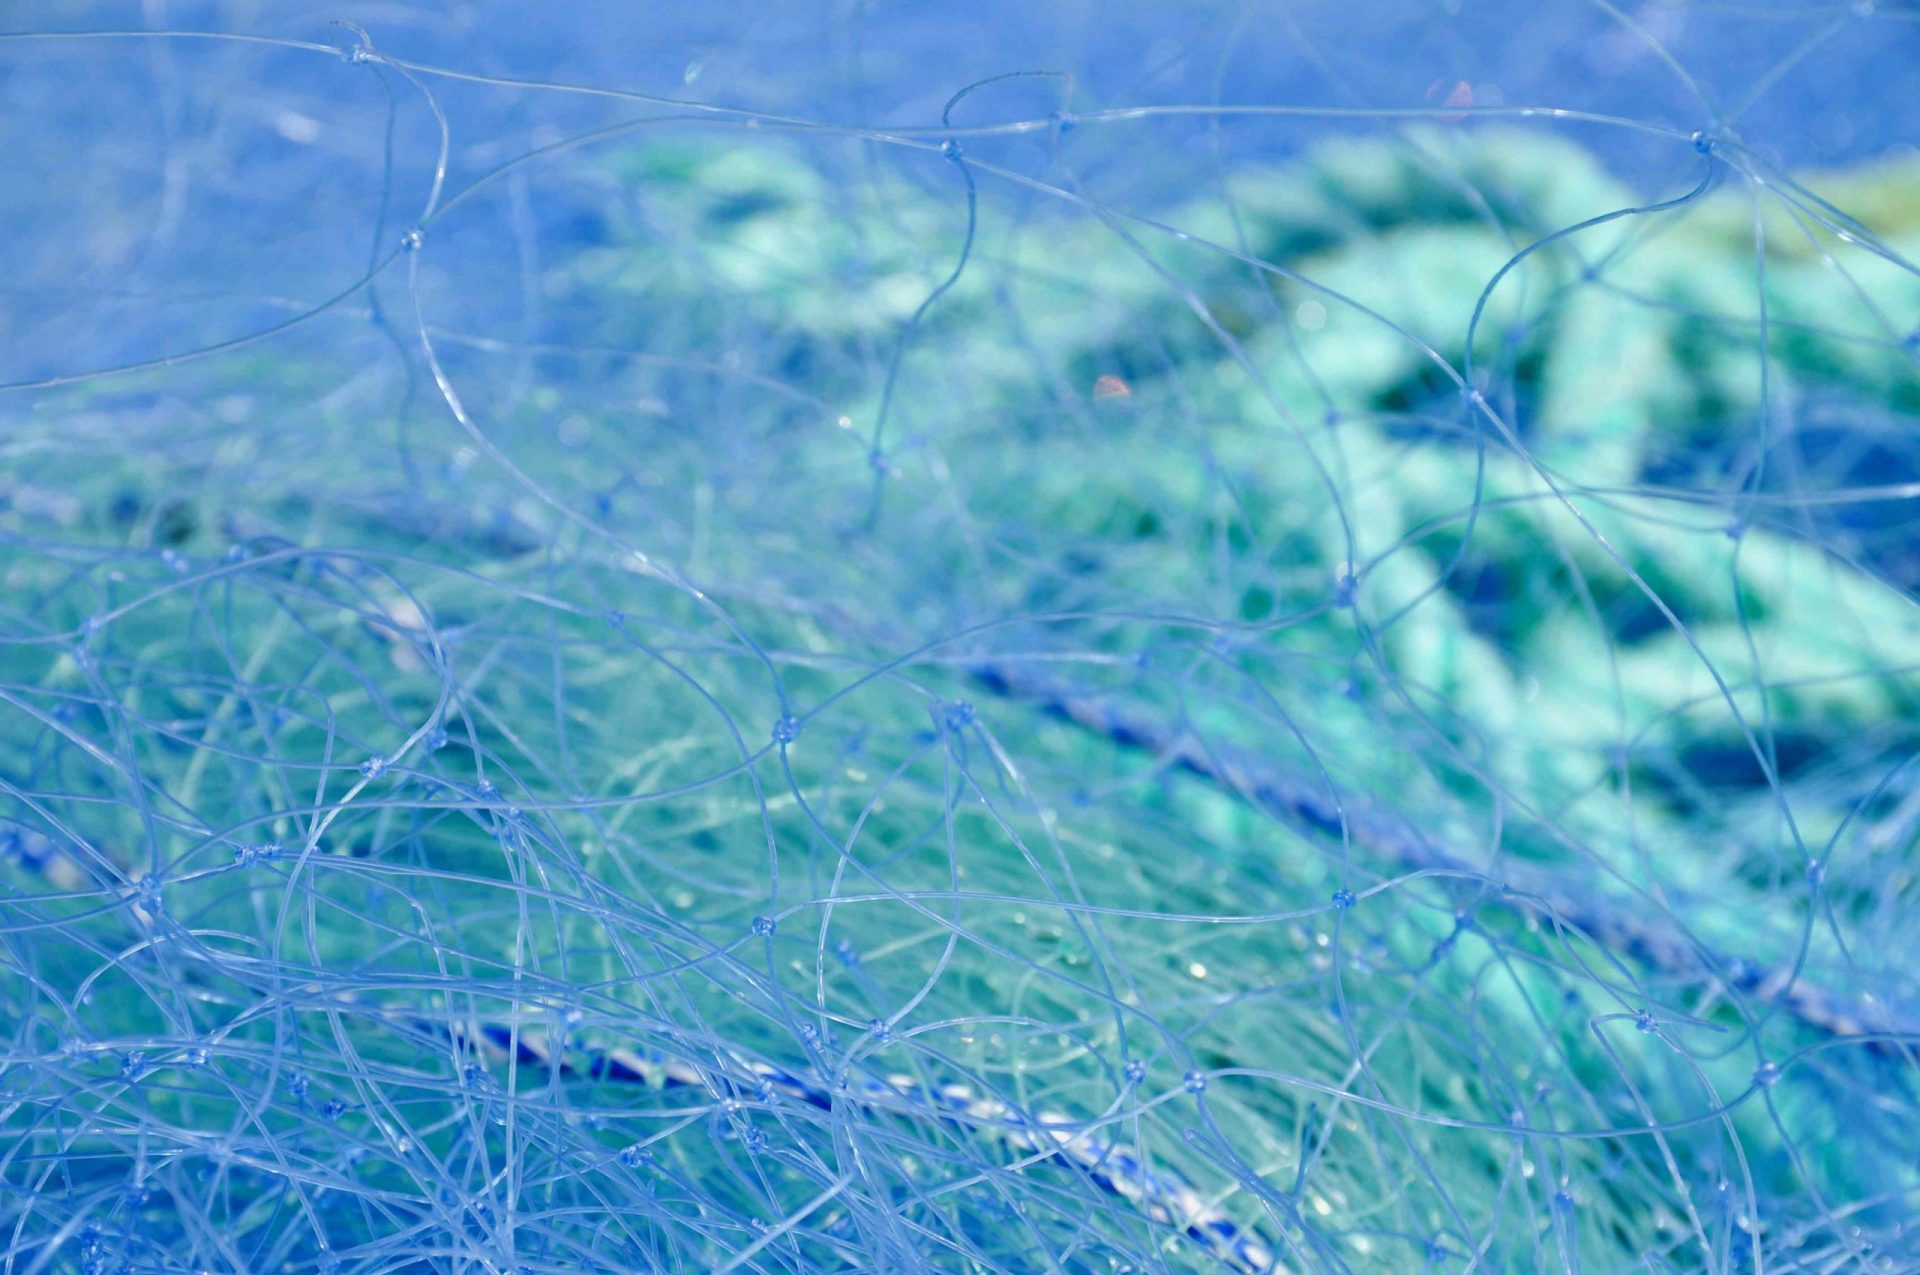 Abstracto de una red de pesca azul con línea de flotación